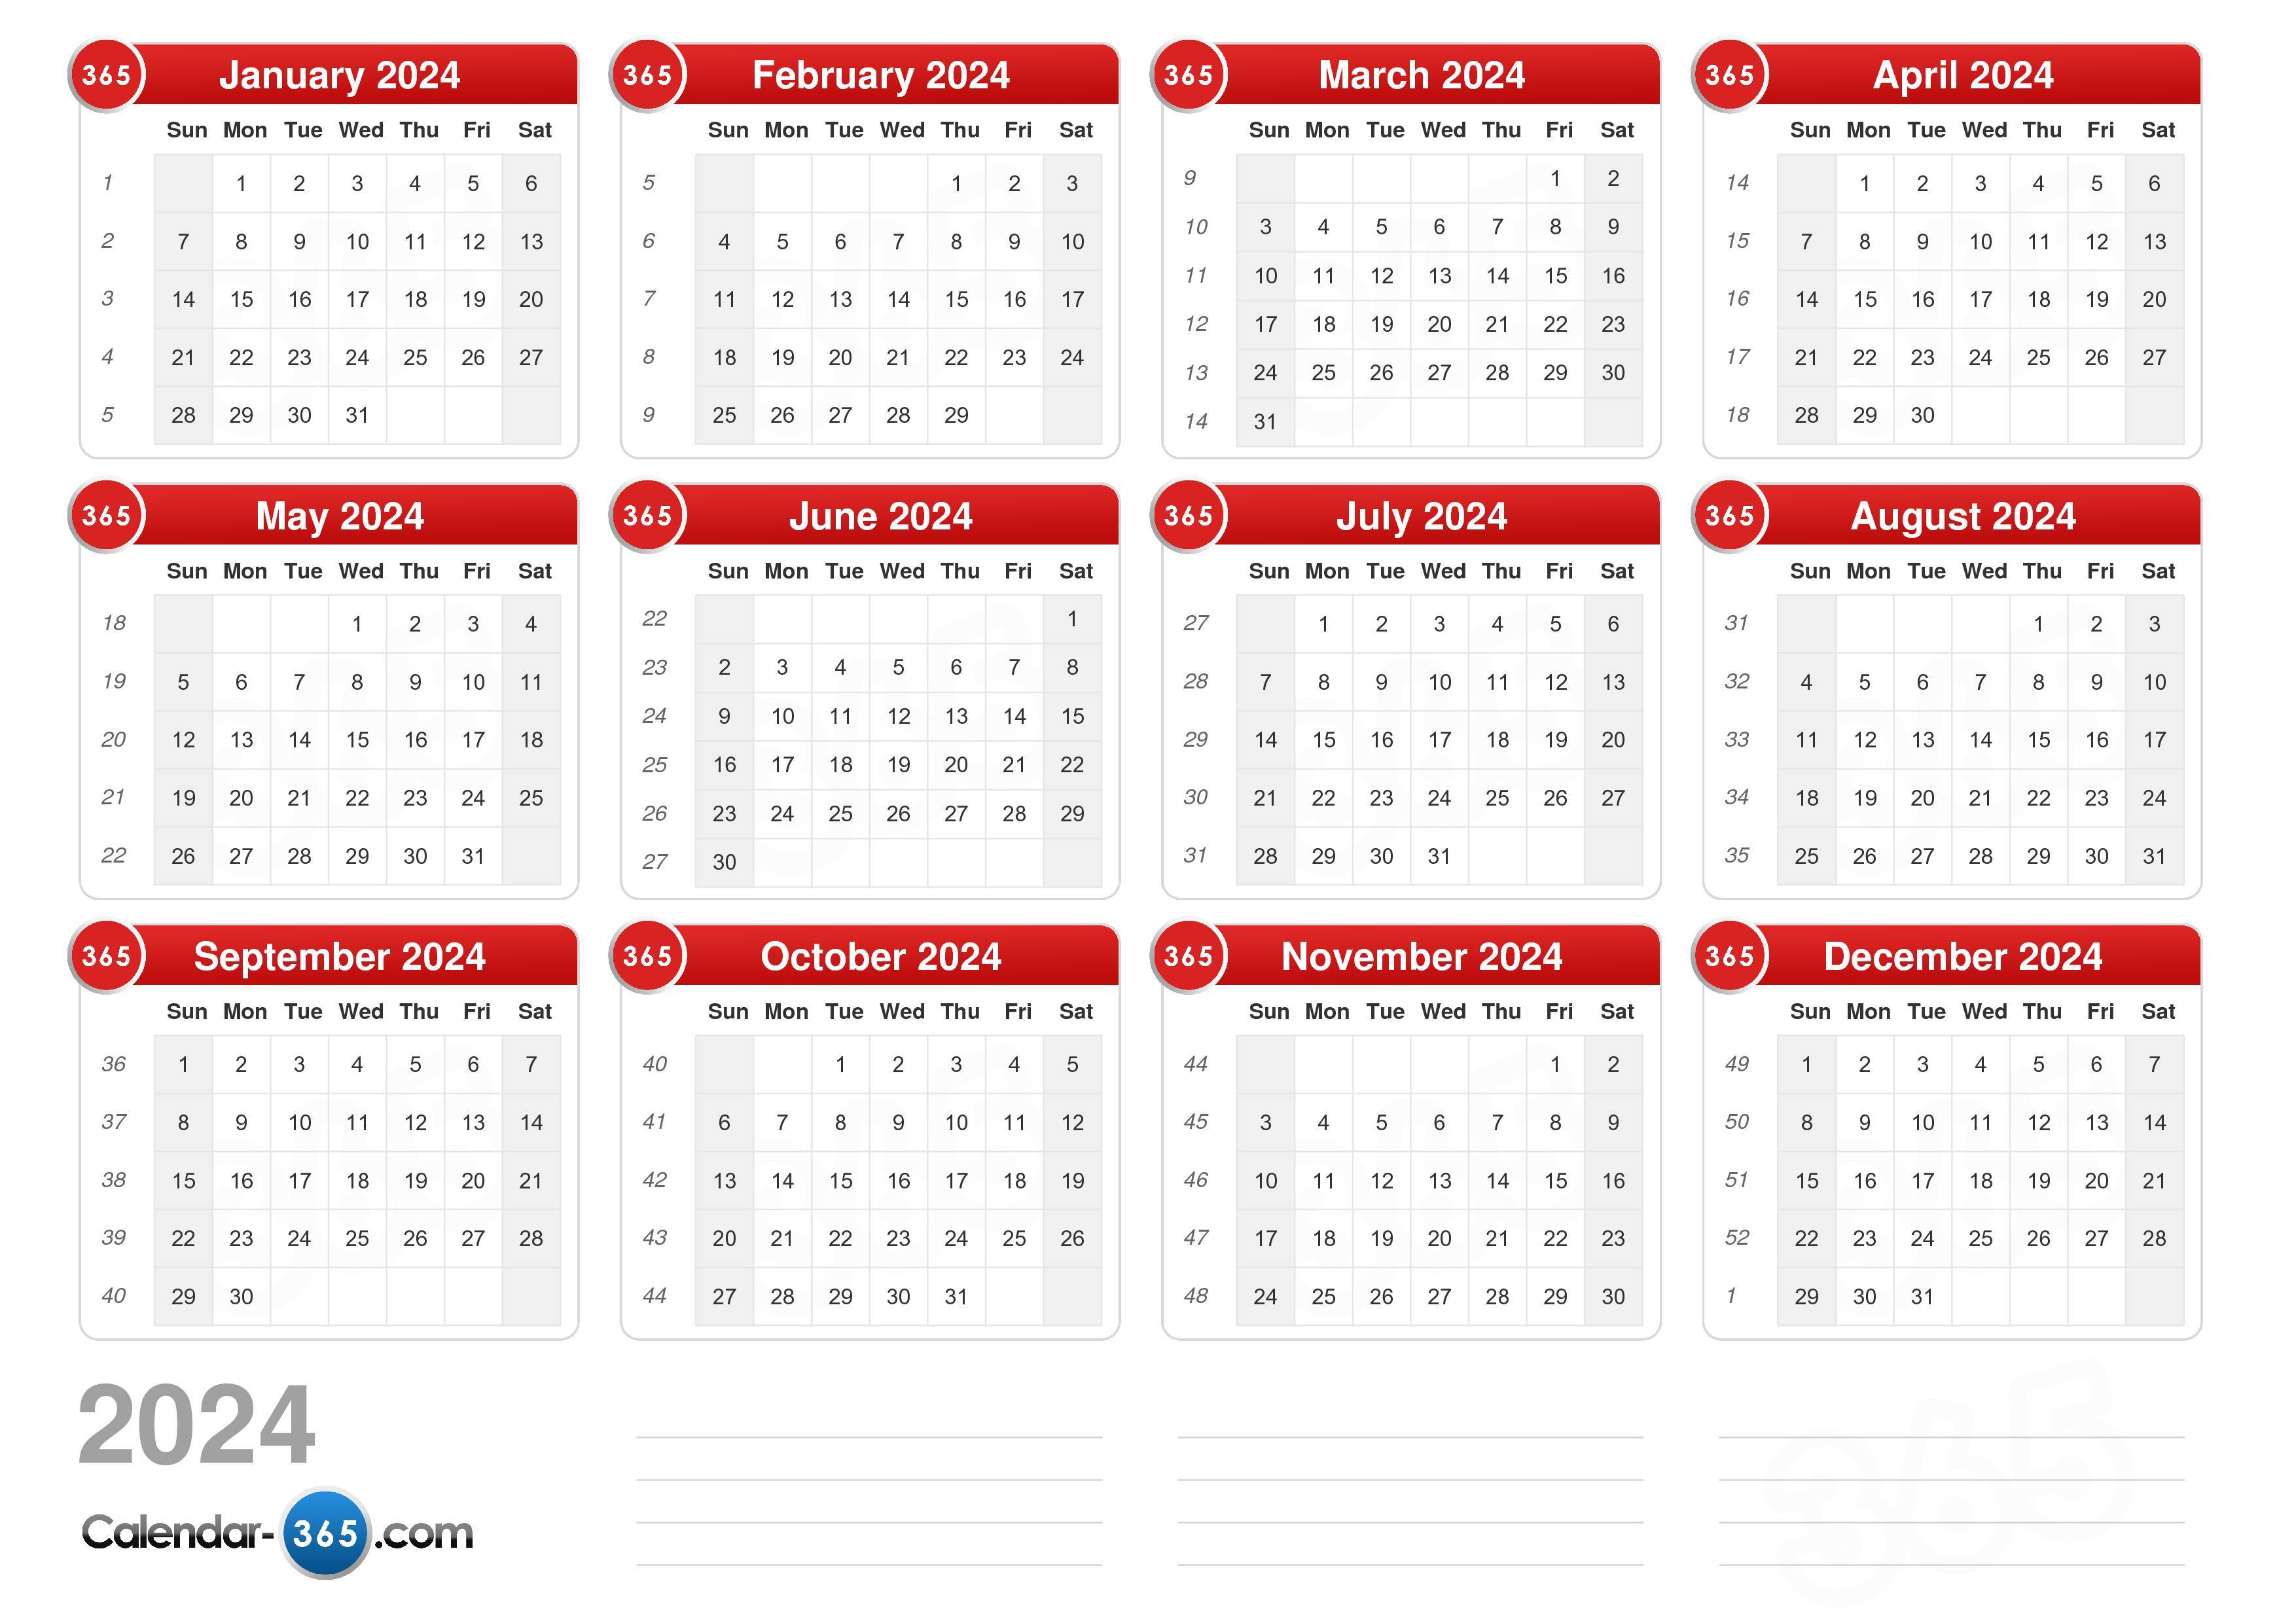 2024 Summer Calendar Dates By Year Calculator Cat Calendar 2024